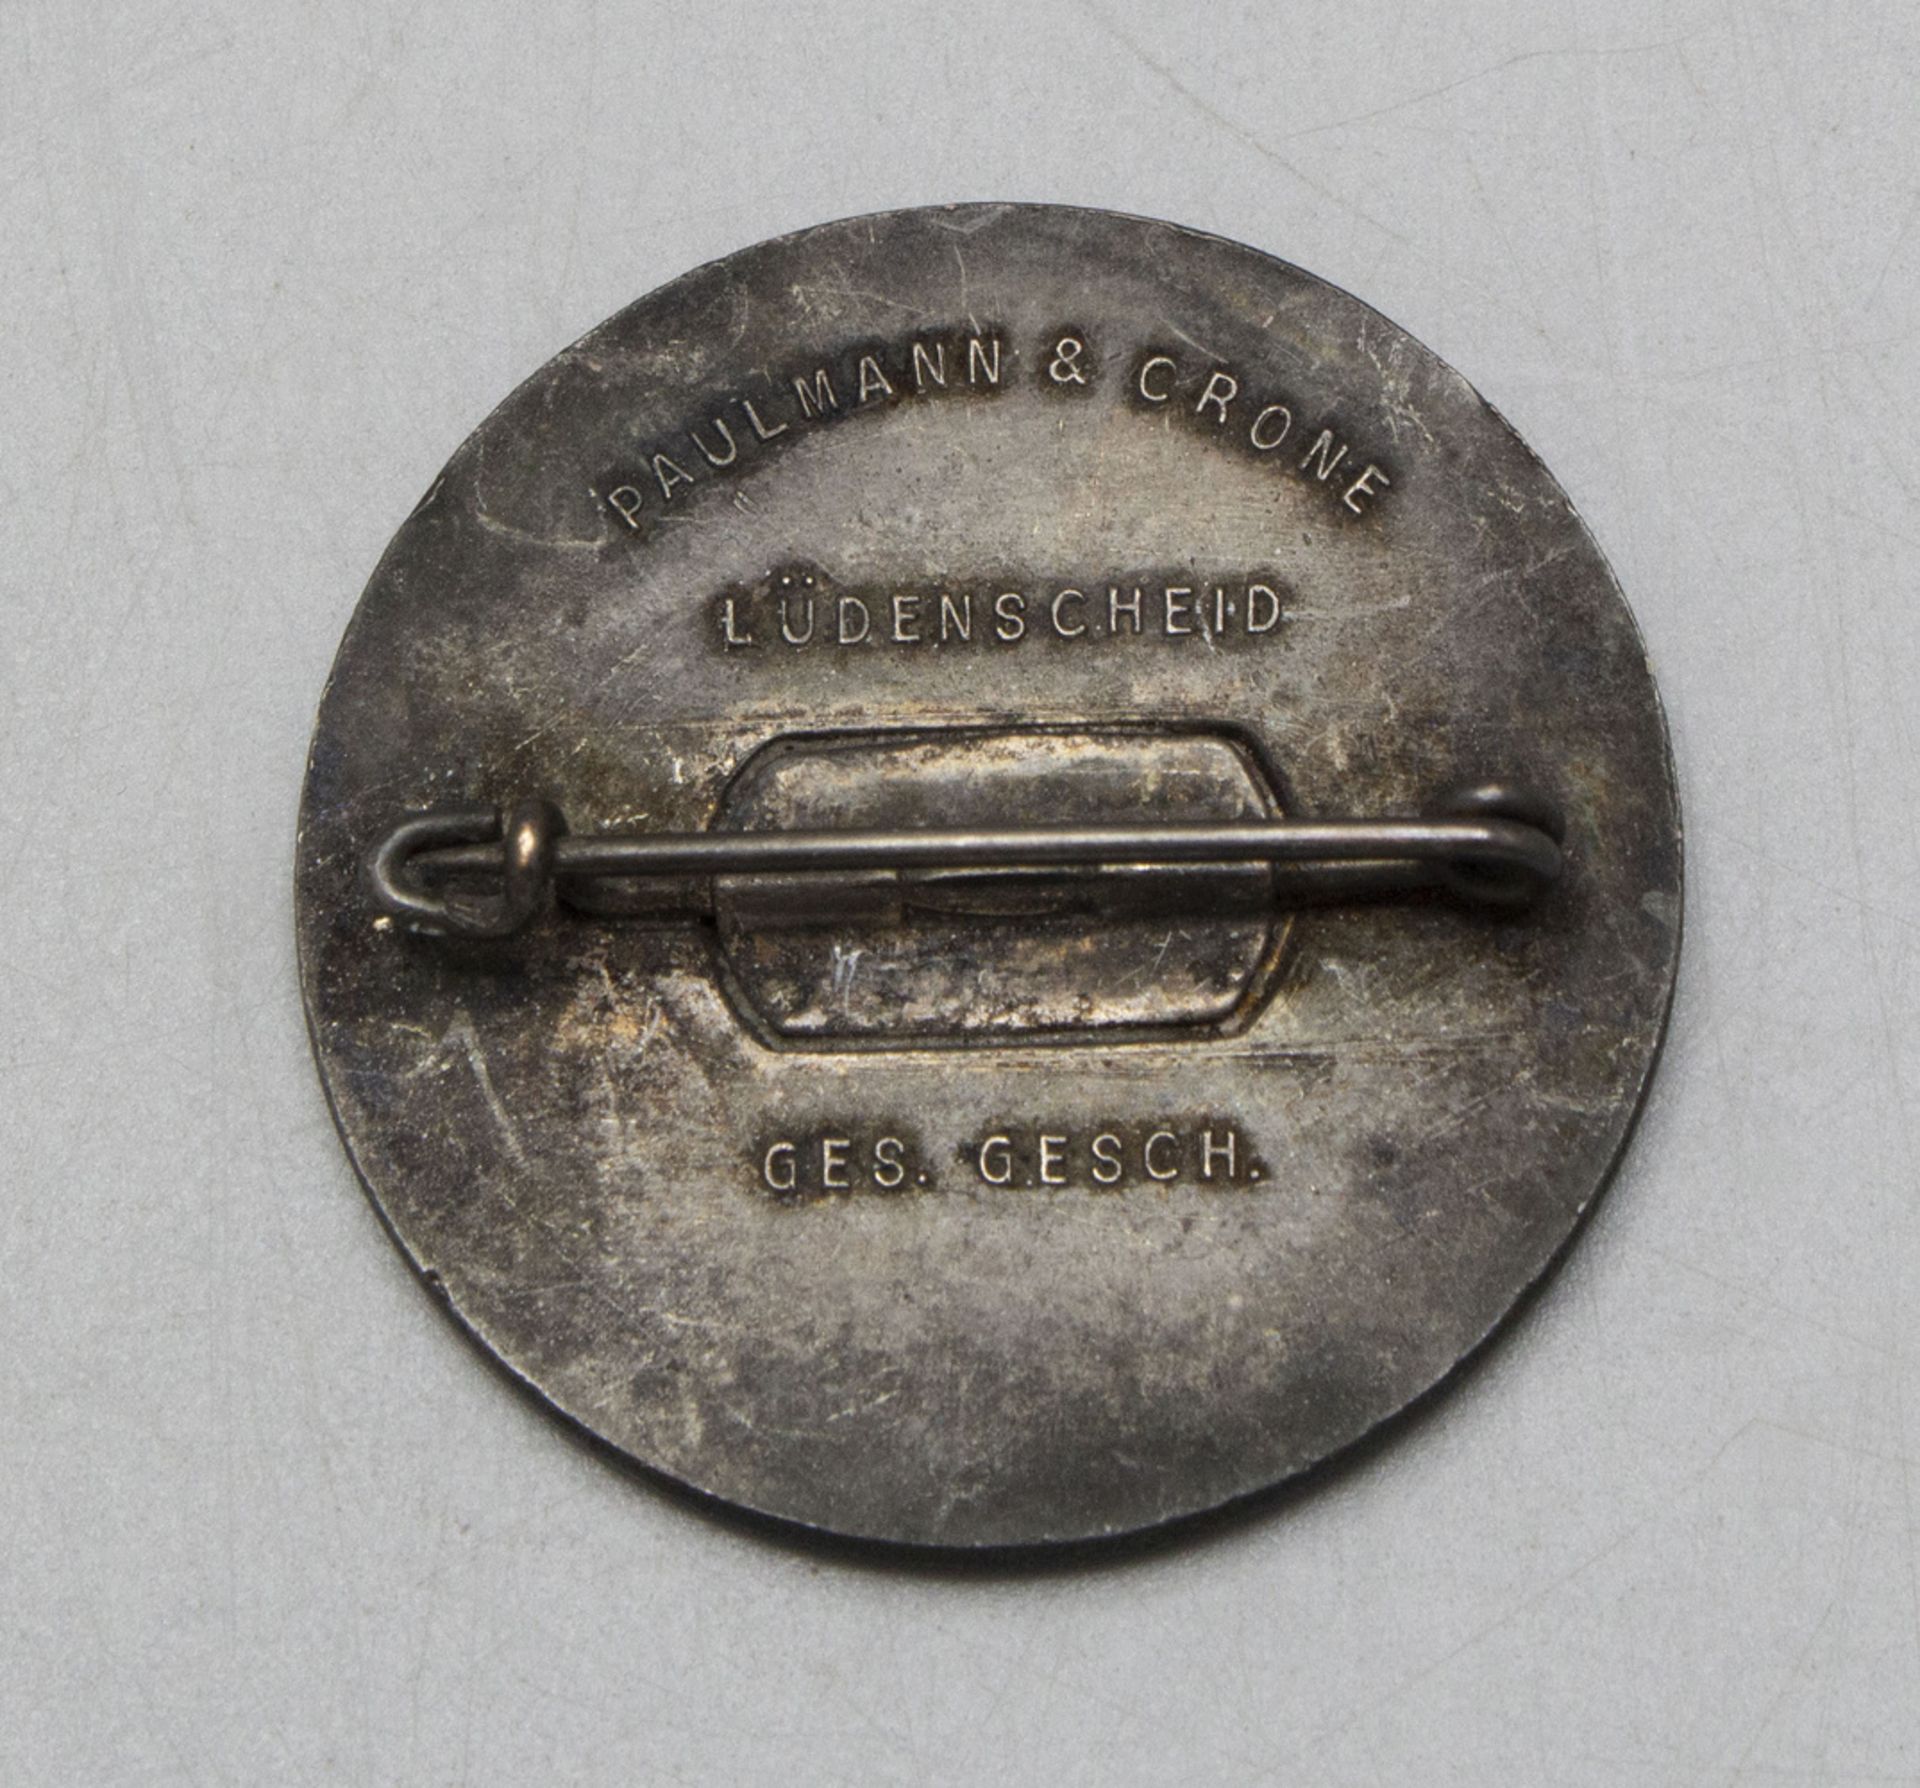 Ehrenzeichen und militärische Objekte / Medals and military objects, 3. Reich - Image 6 of 6